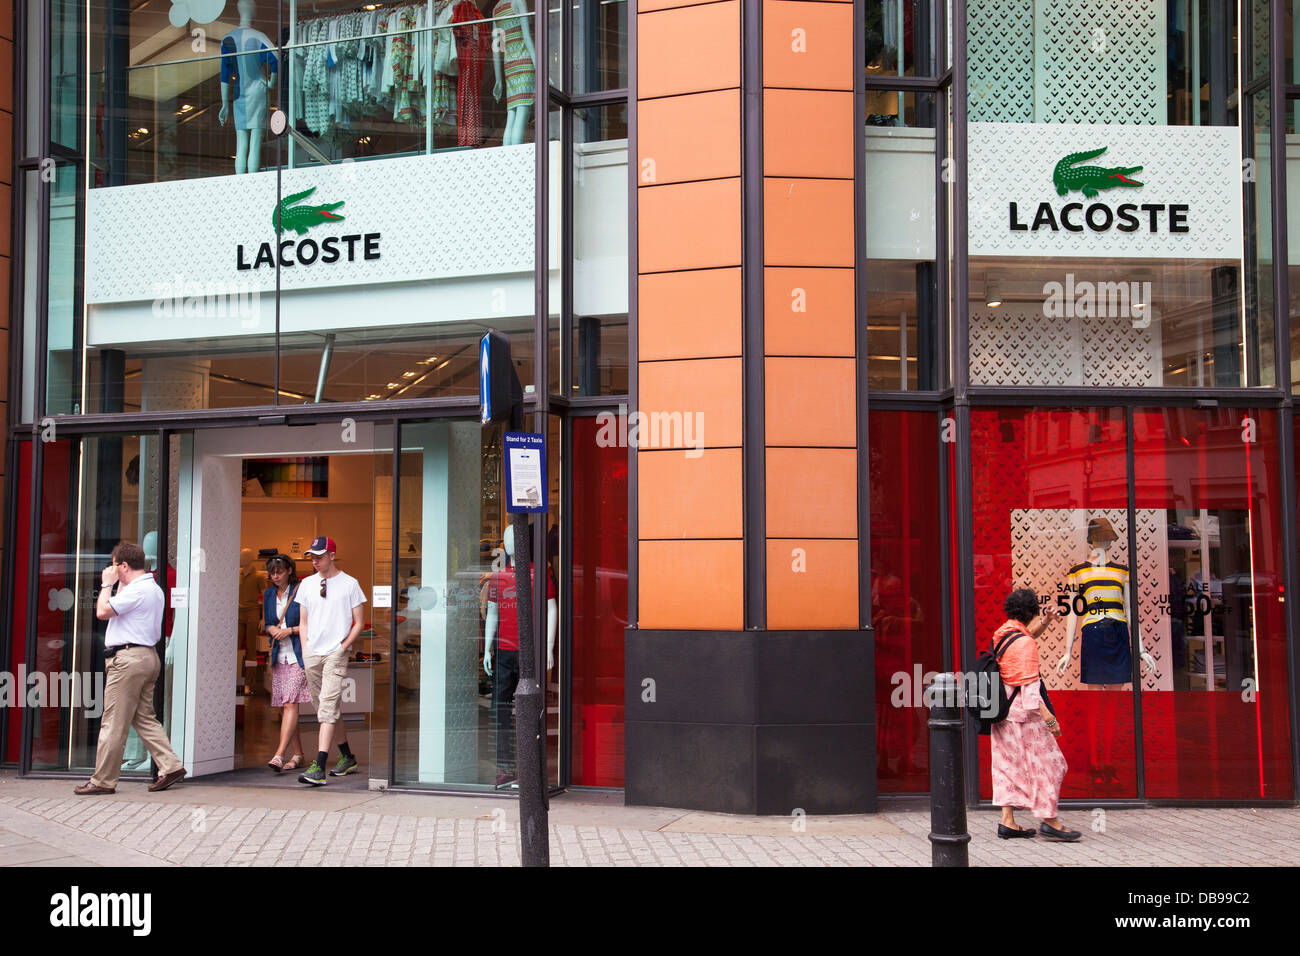 Lacoste Store Shop London Banque d 